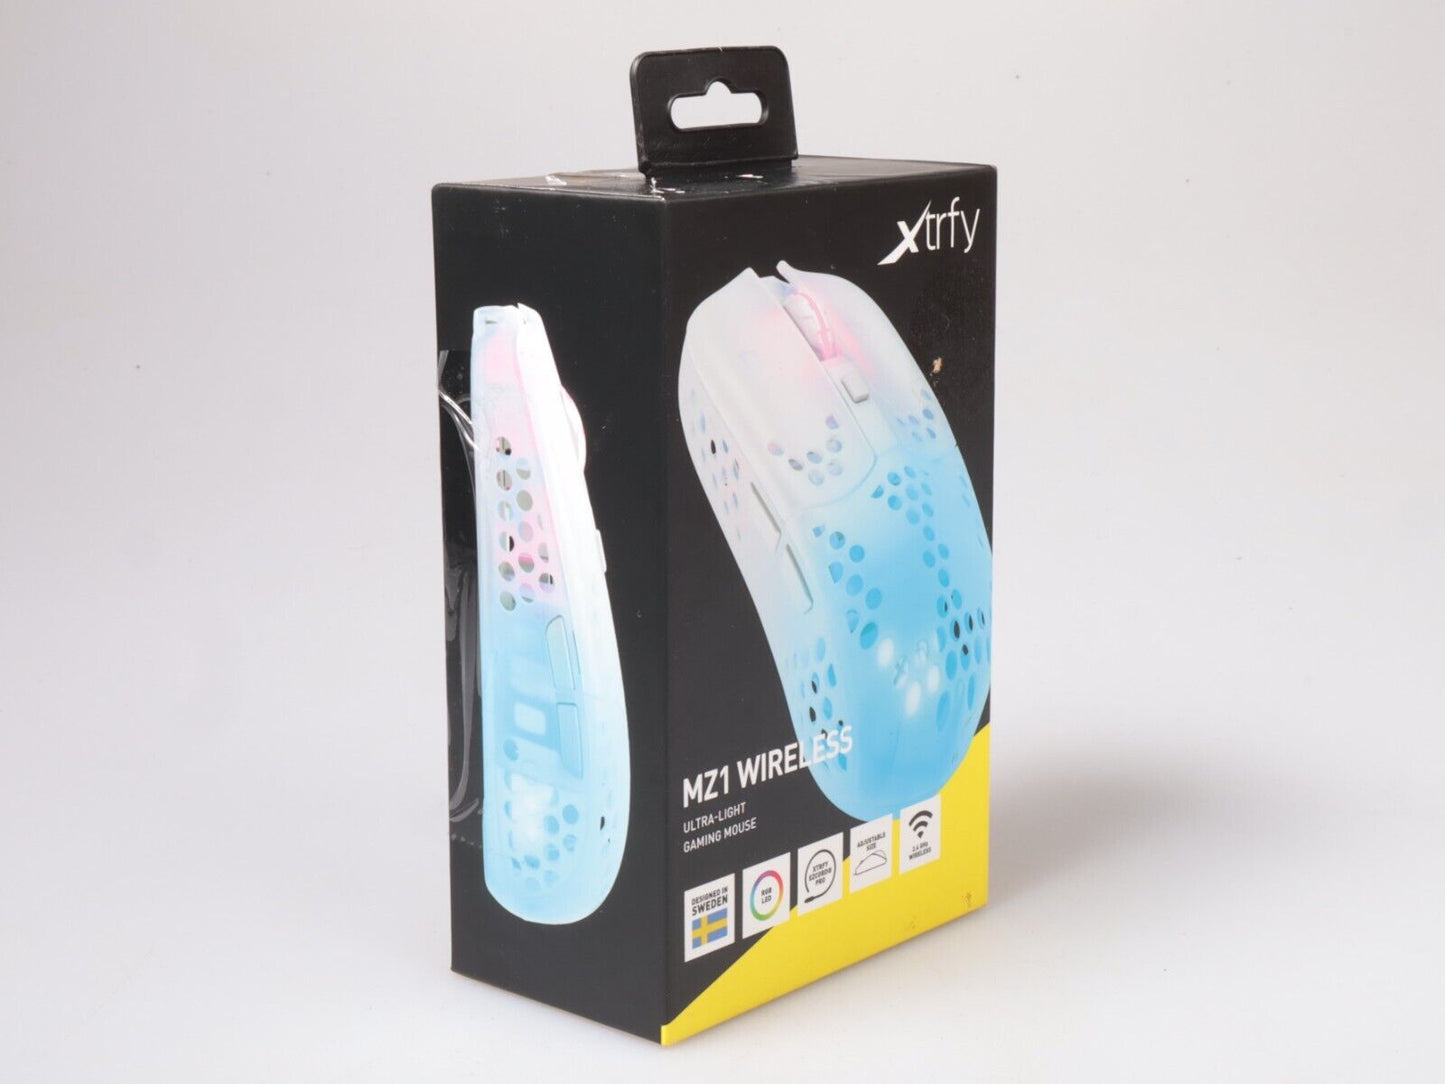 Xtrfy Mz1 Zys-rail | Bedrade witte gamingmuis | USB ultralicht 16k DPi